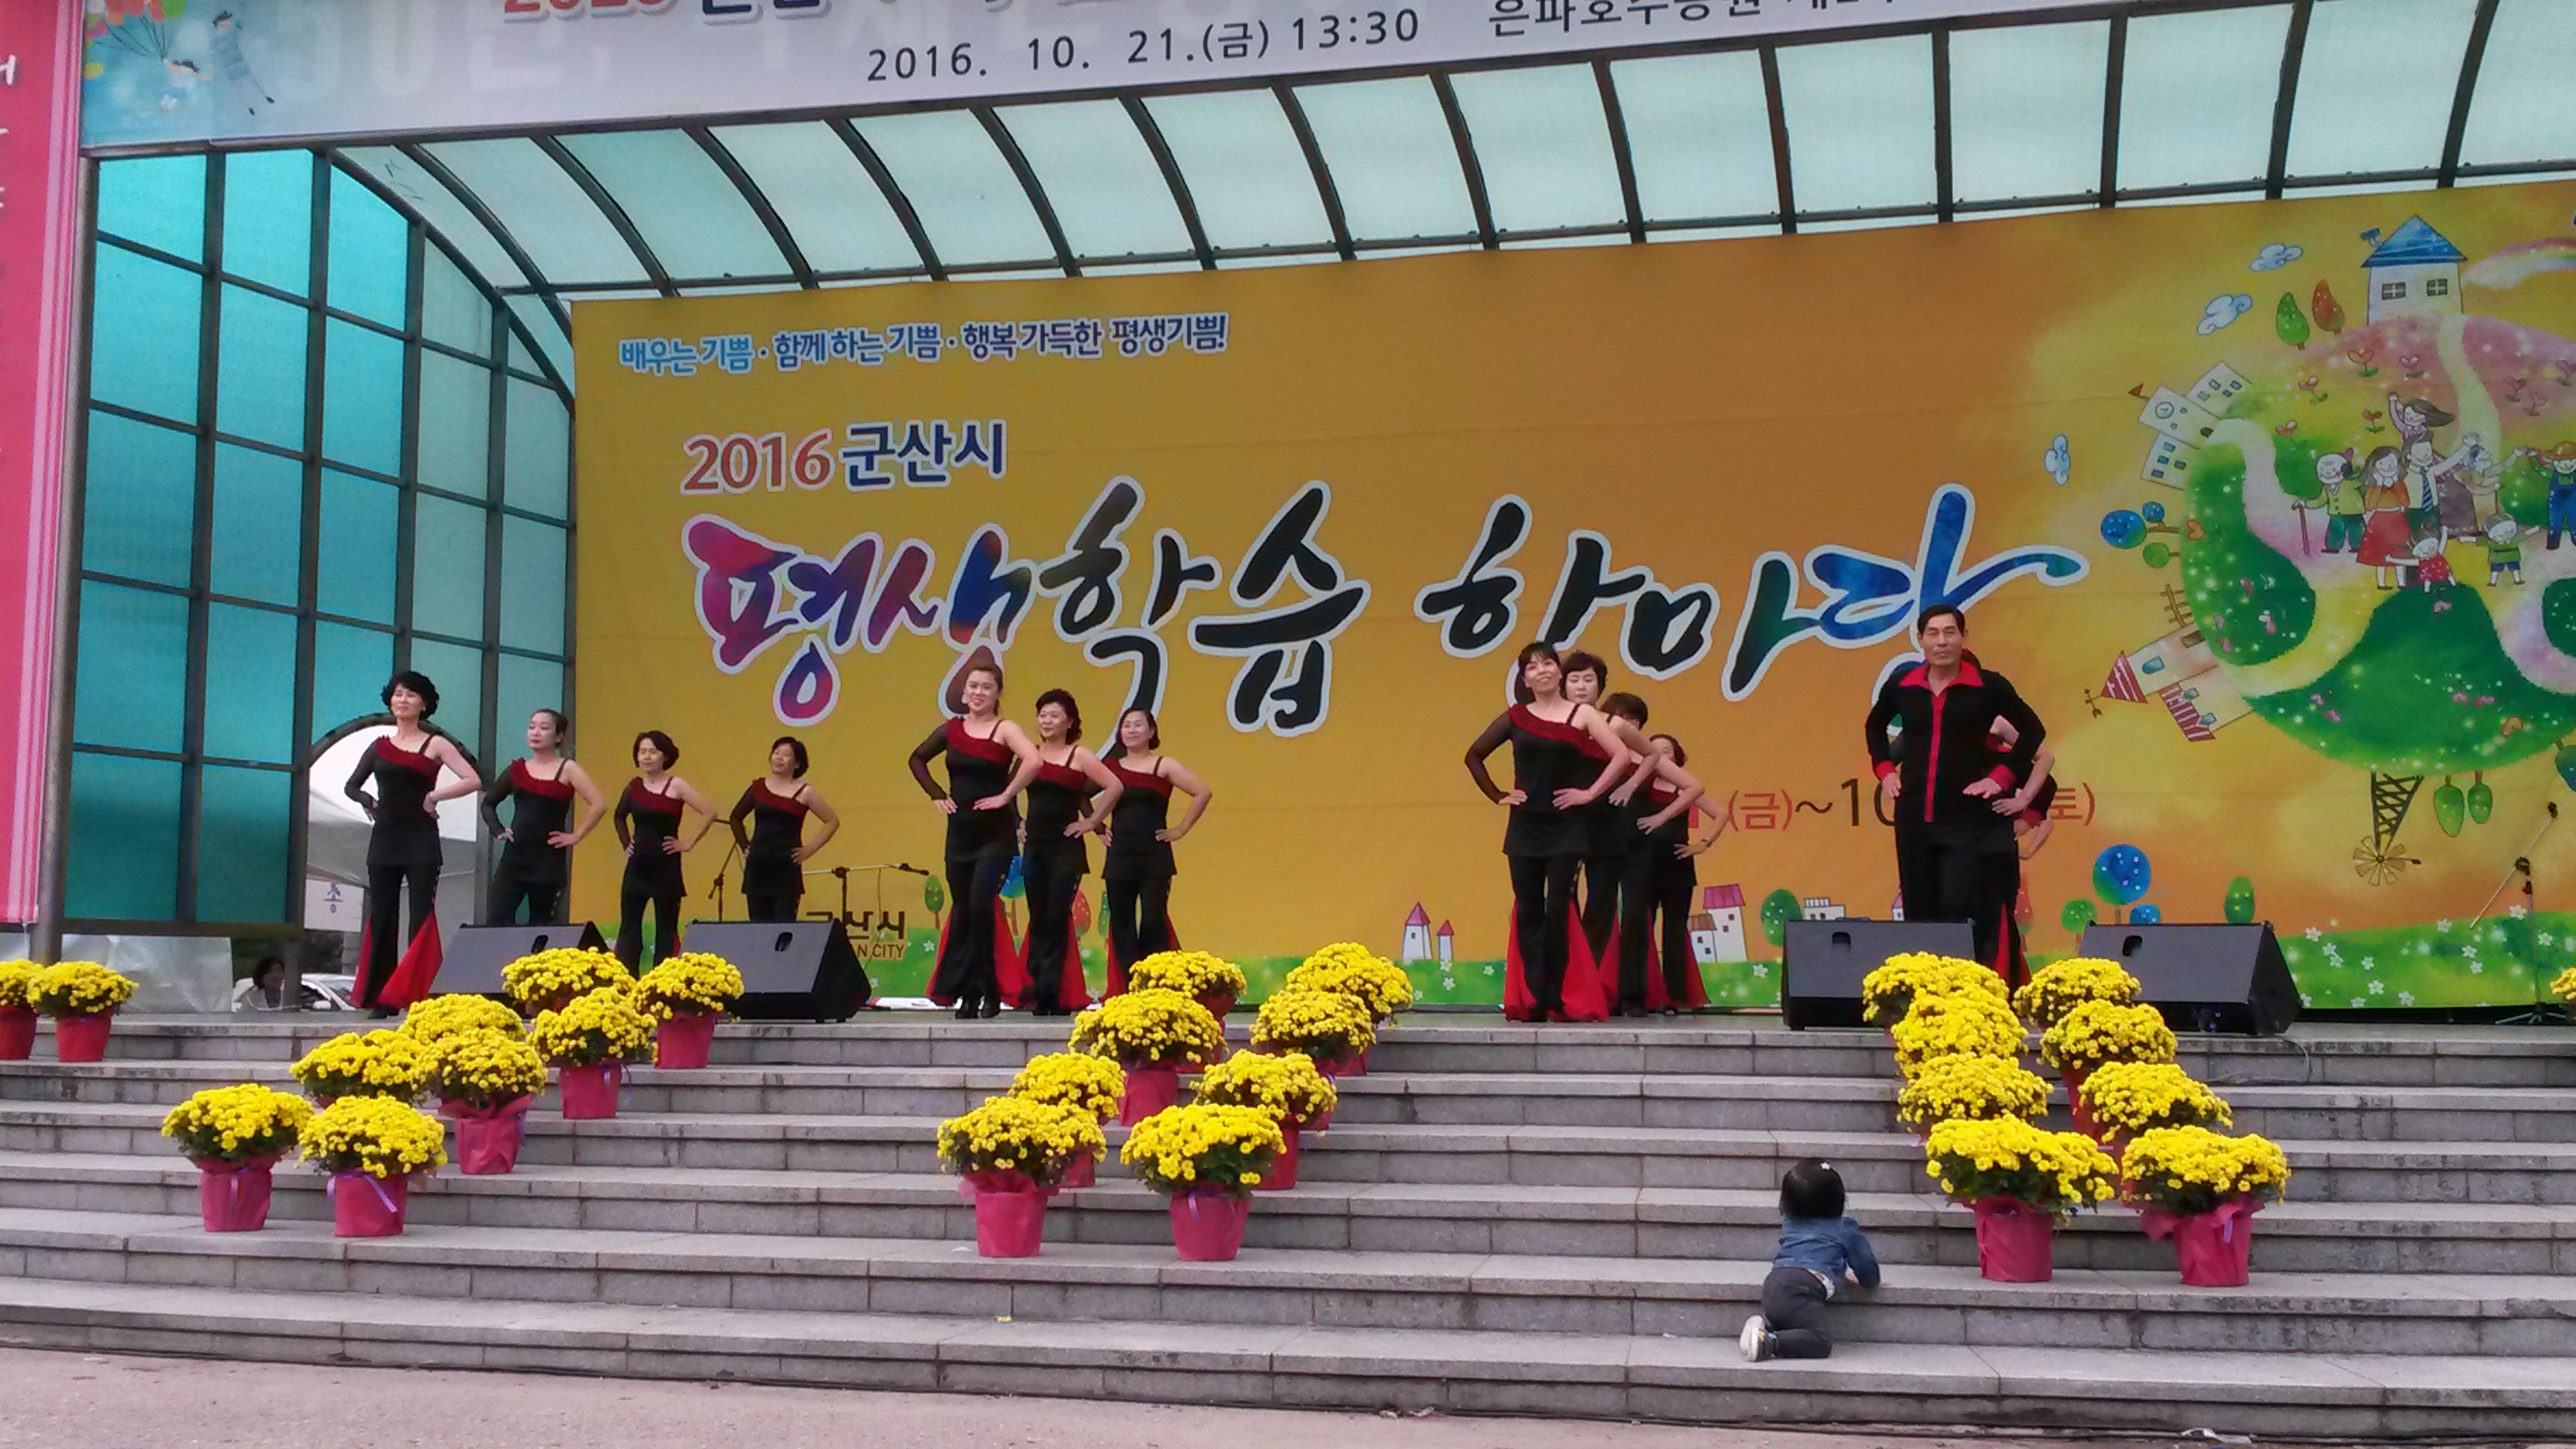 2016년 주민자치센터 경진대회(라인댄스)